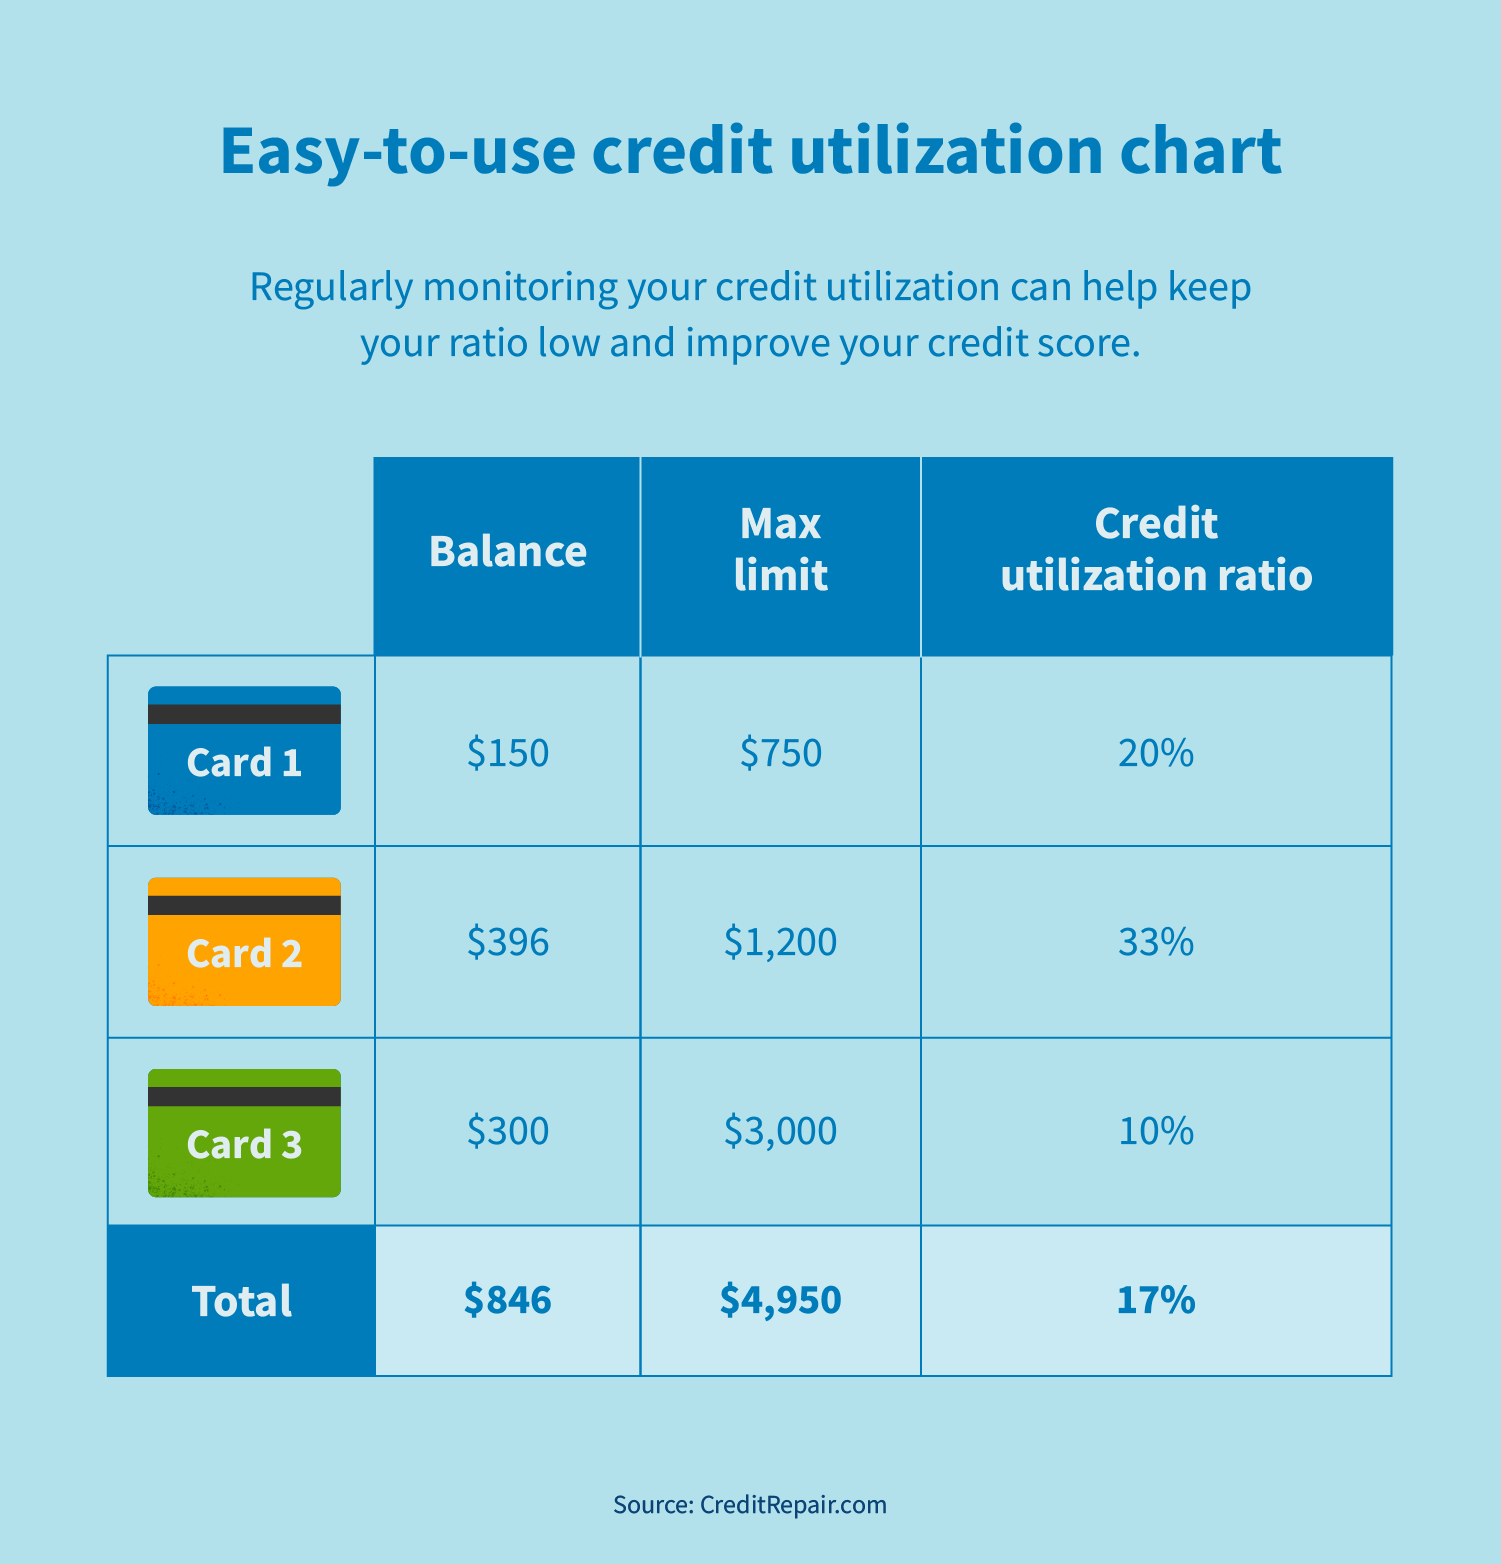 Improved credit utilization